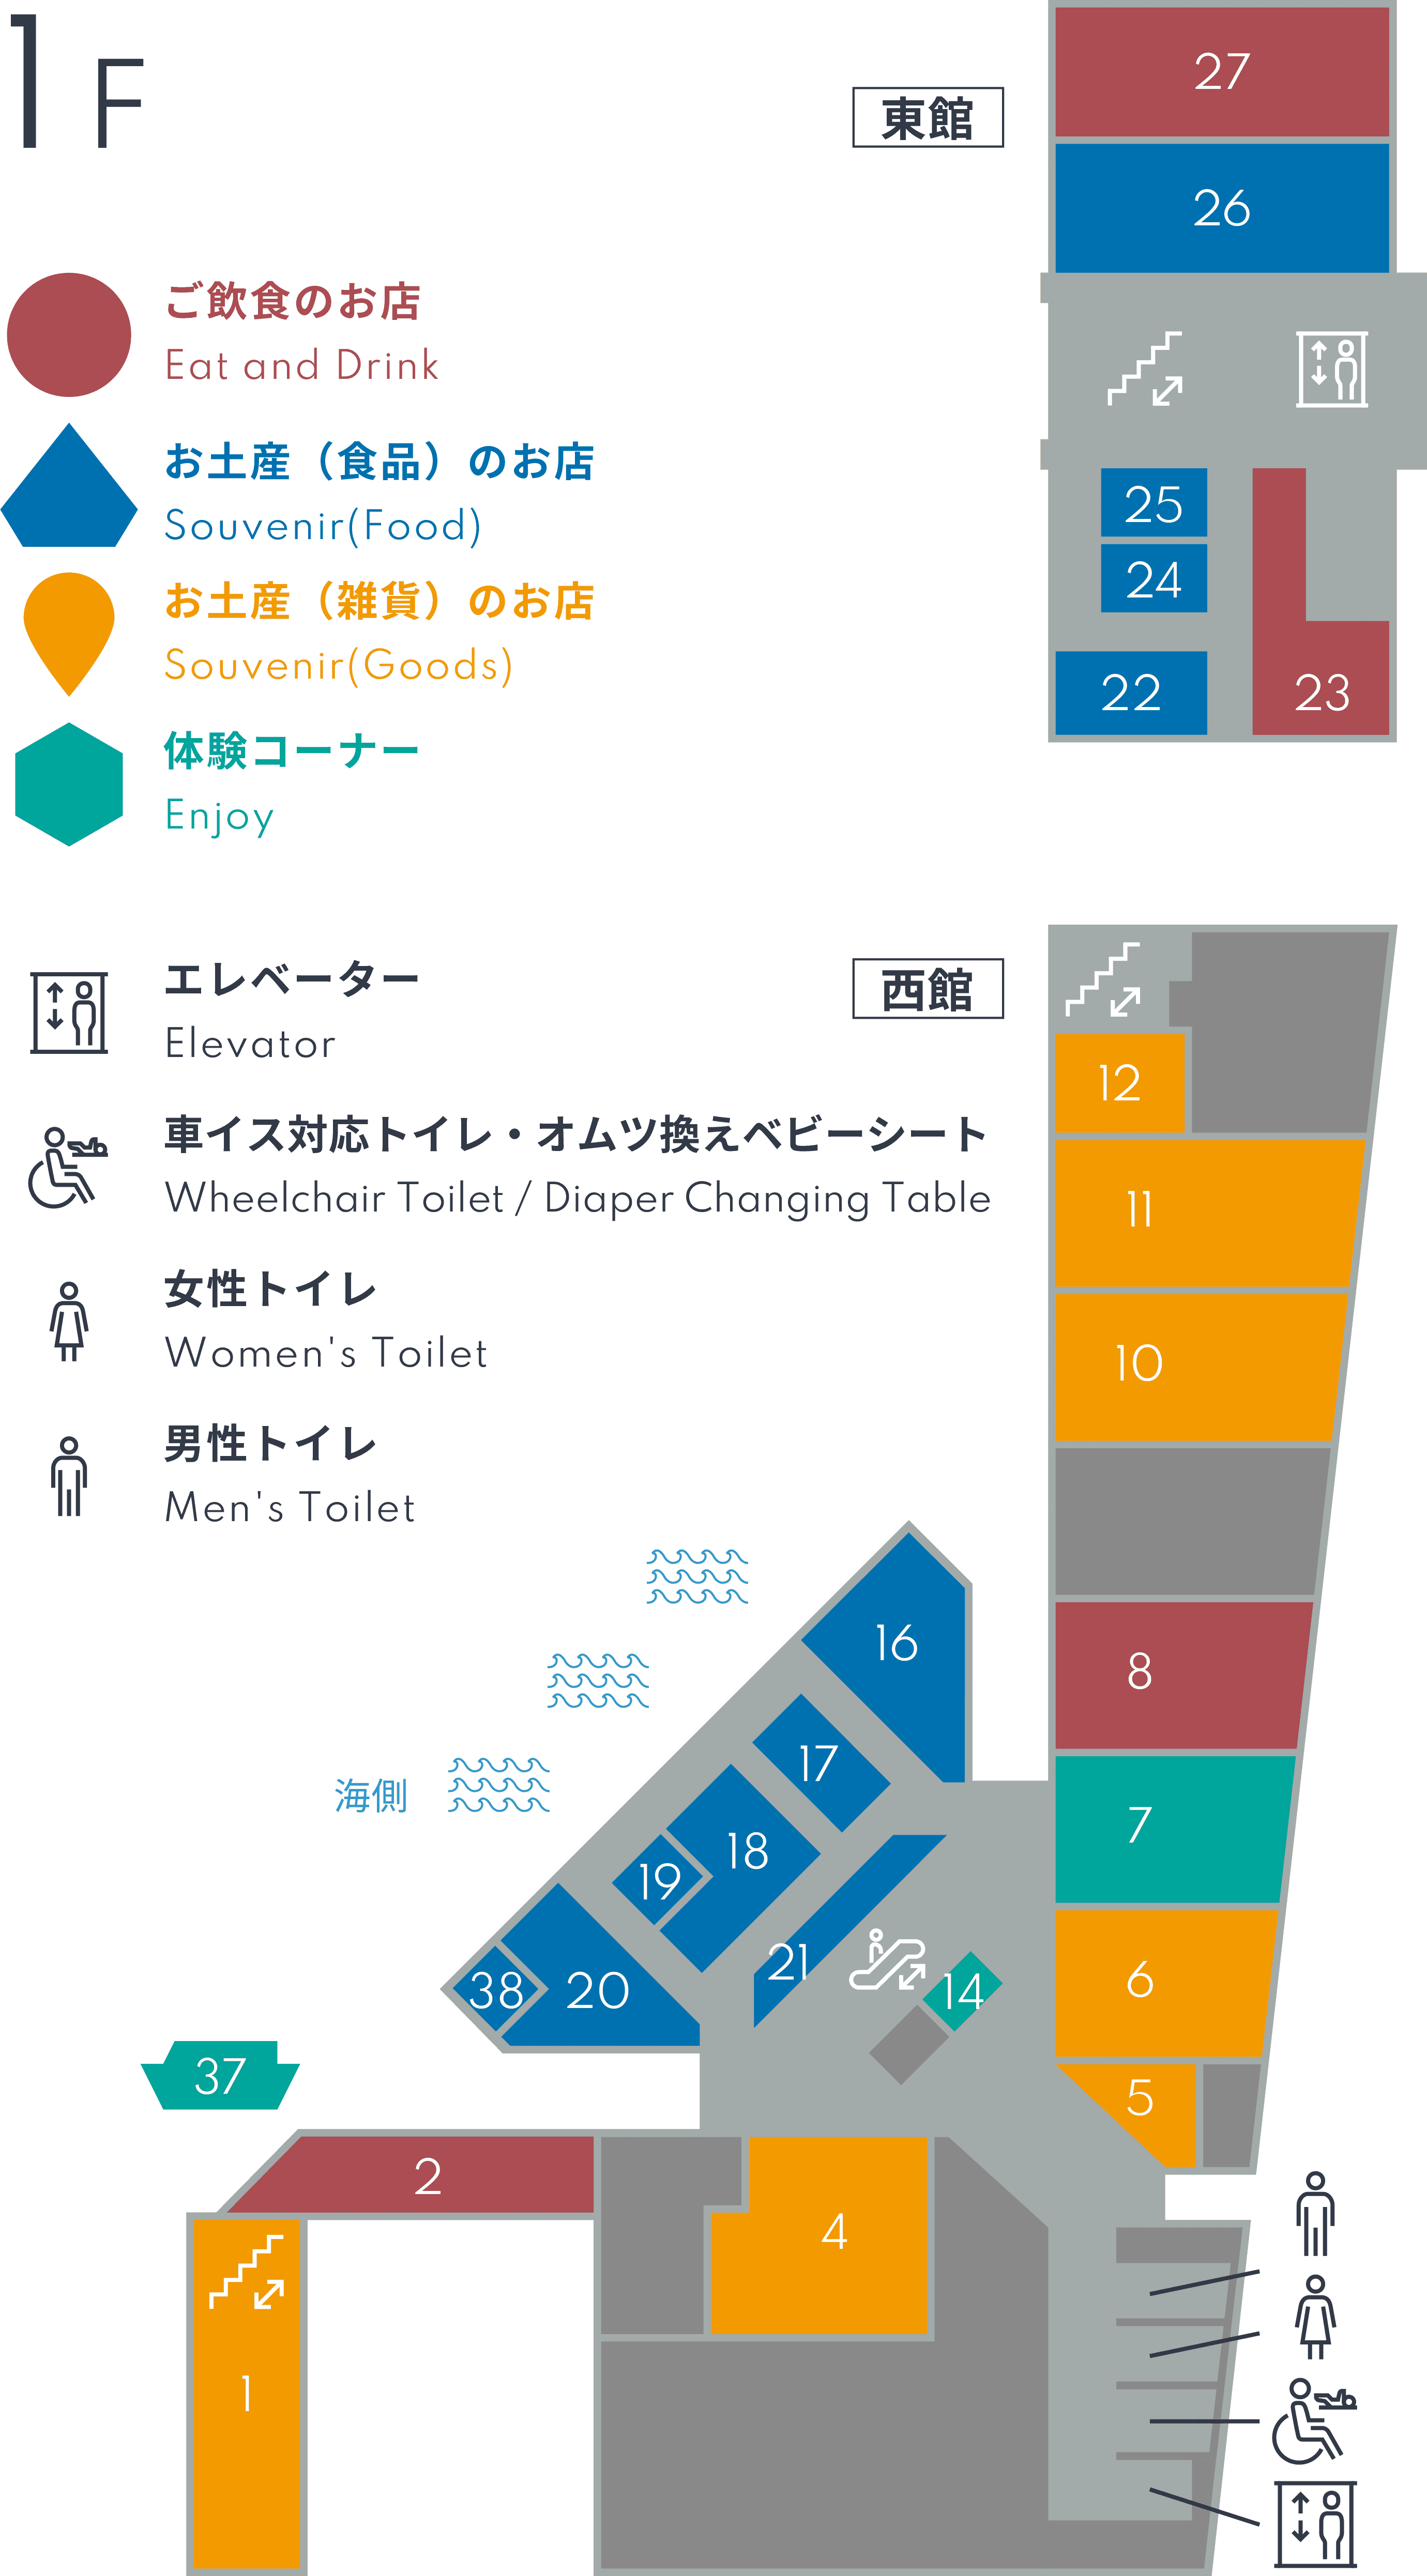 Floor Guide - 1F